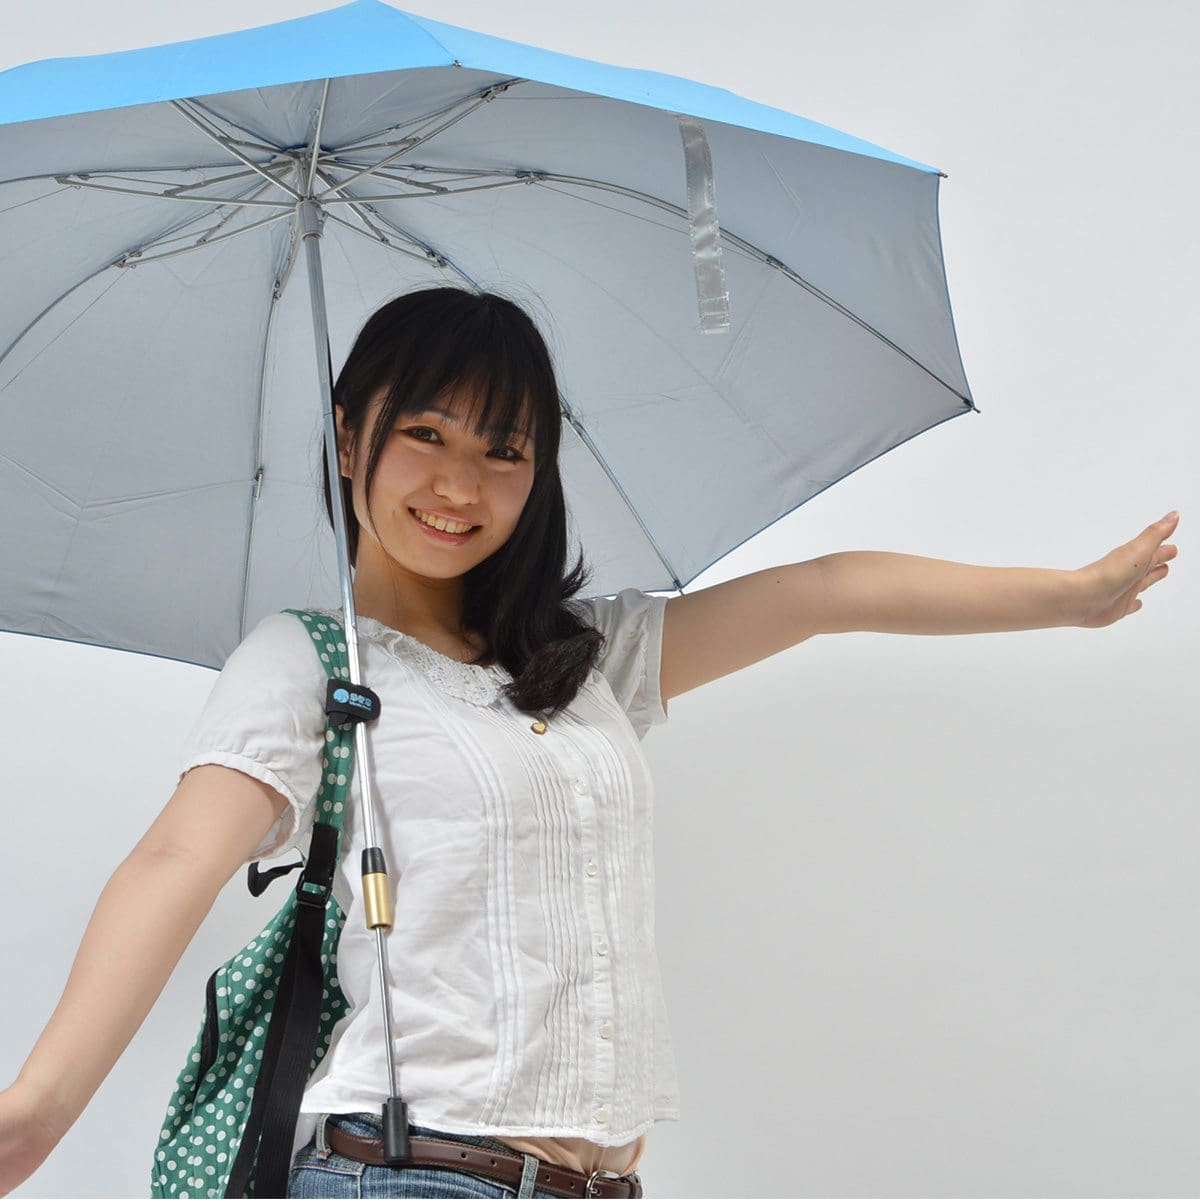 Le parapluie mains-libres de Thanko